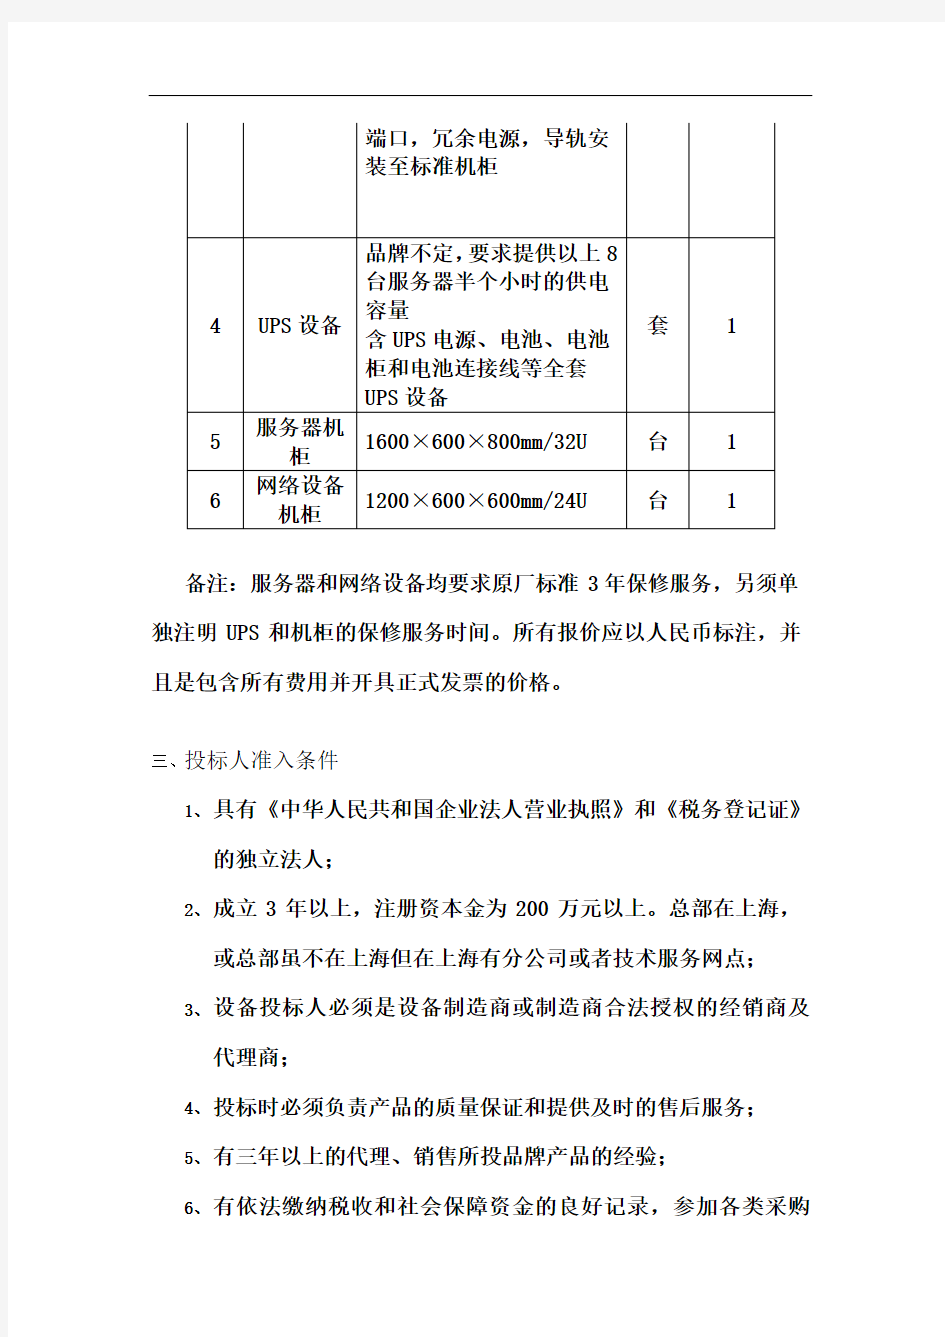 广发期货有限公司上海营业部机房设备招标书